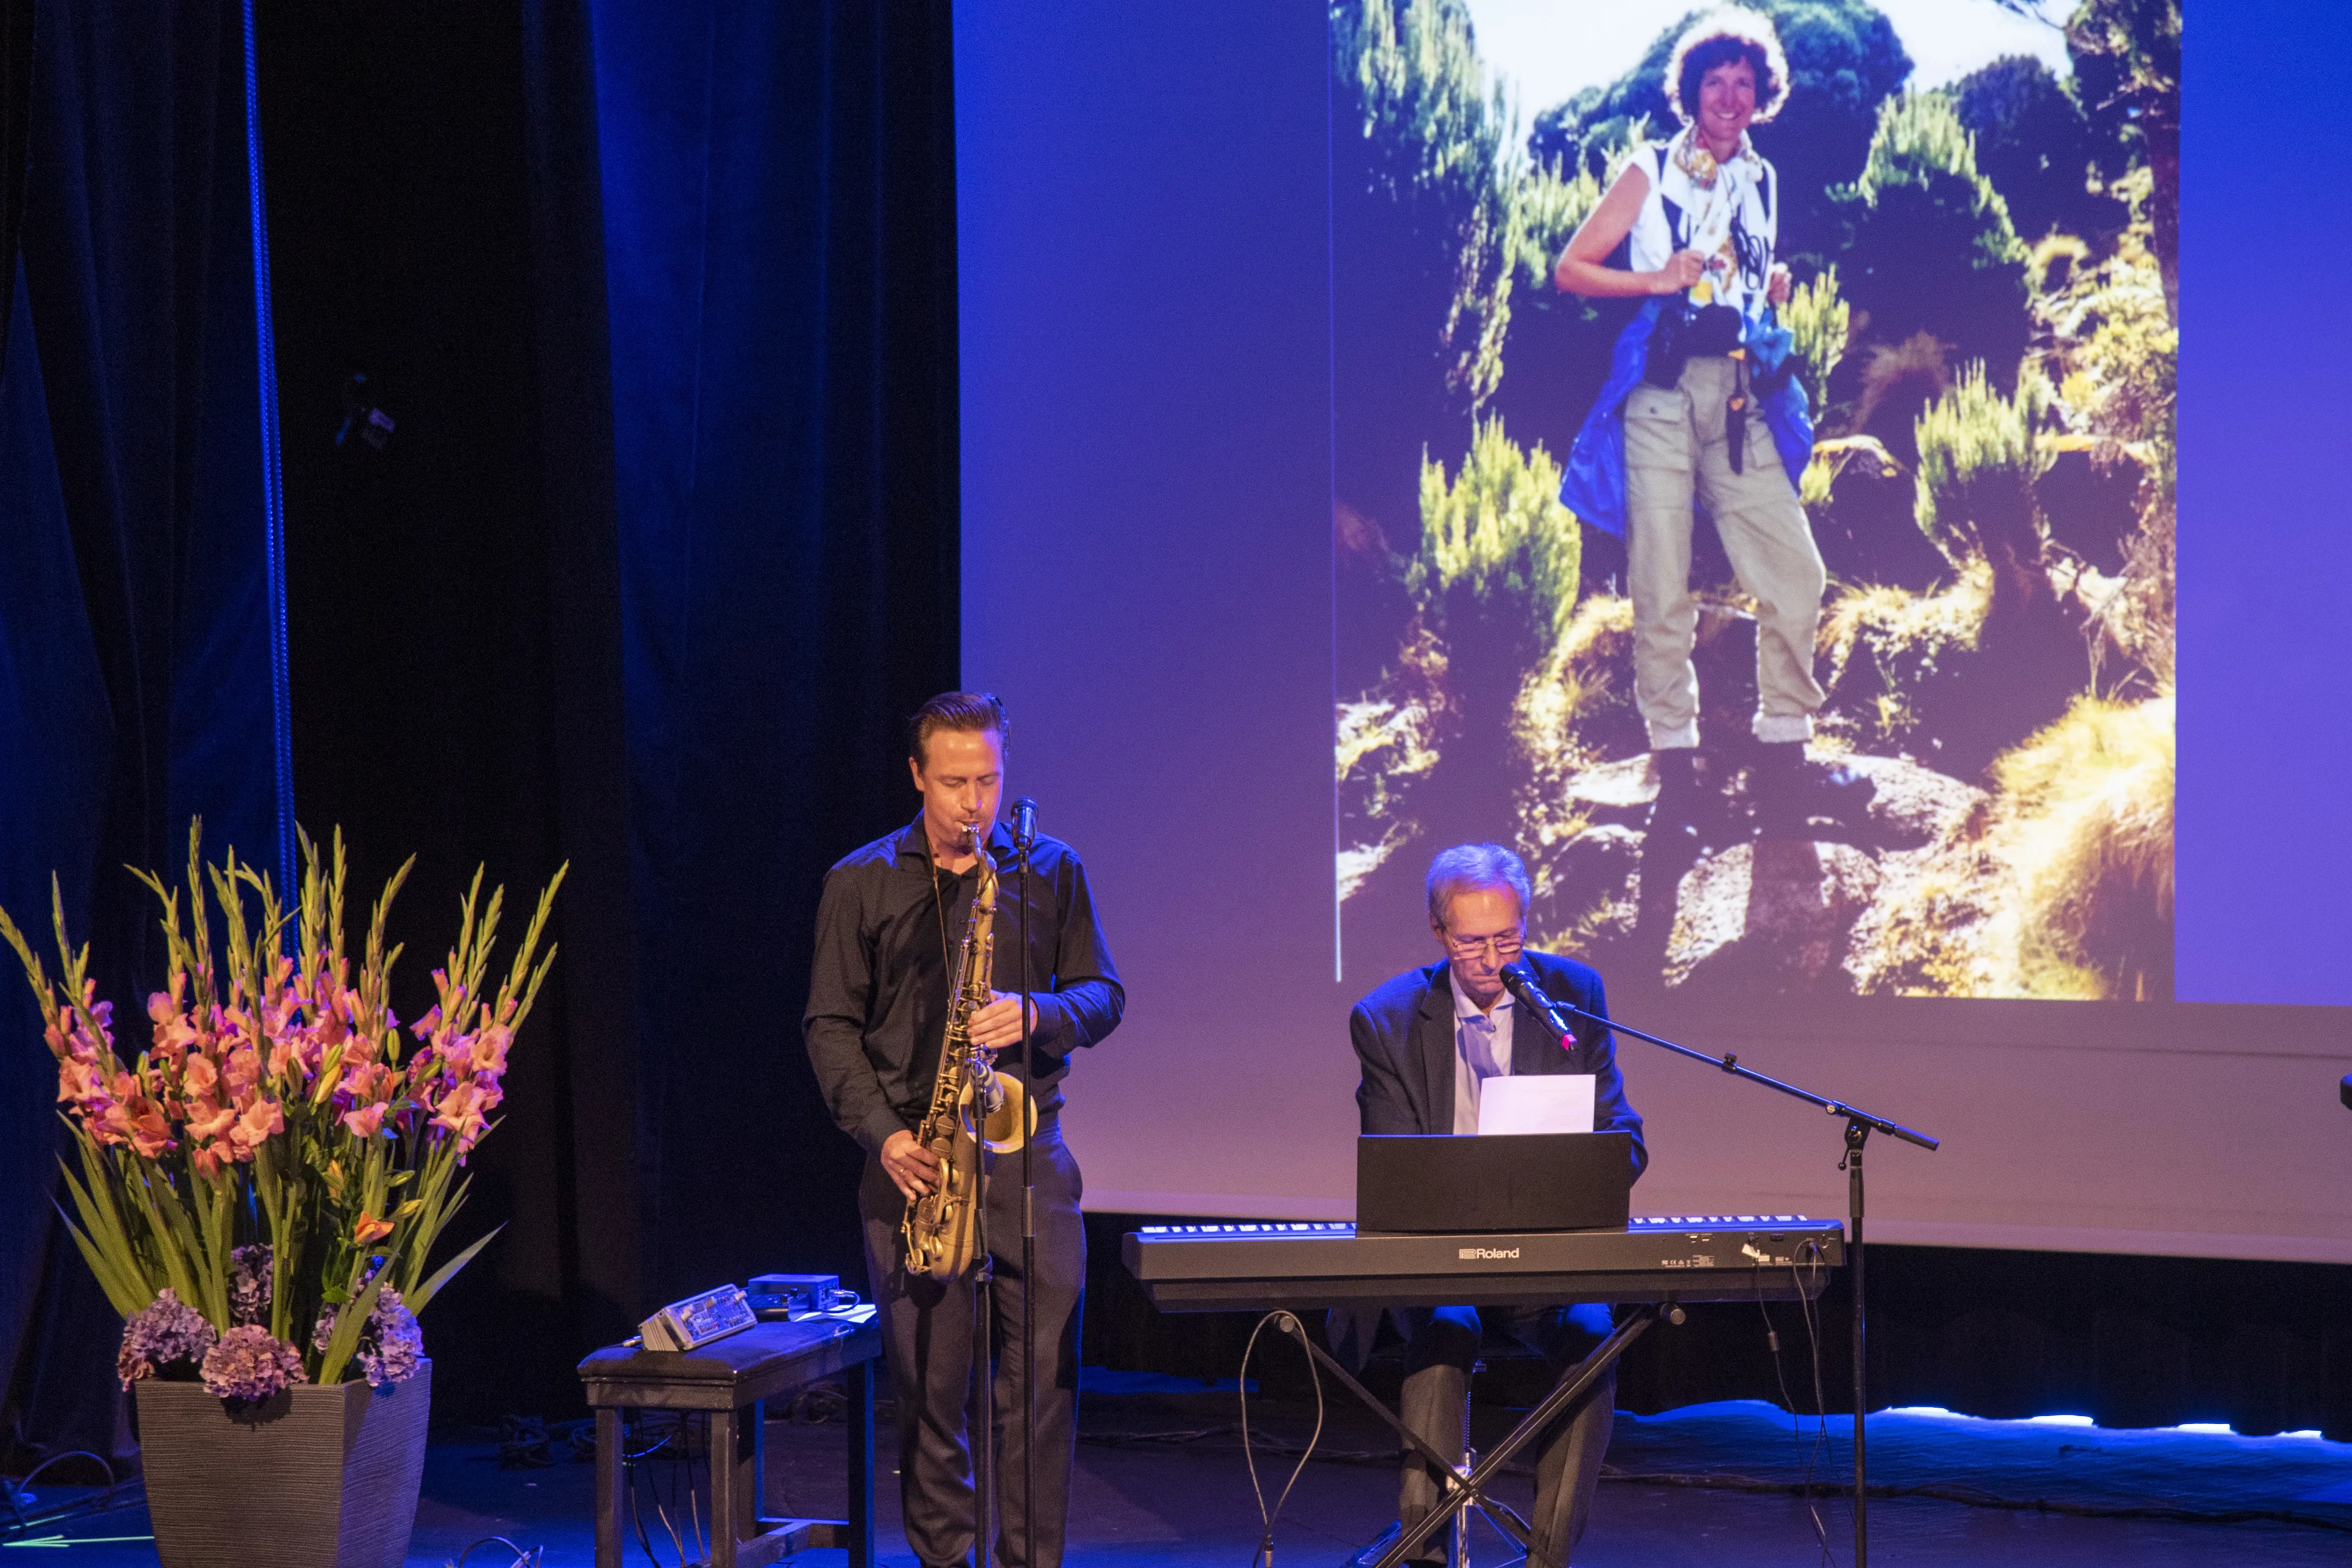 DUO: Saksofonisten og solisten Håkon Kornstad spilte sammen med tidligere klinikkdirektør Jardar Hals.